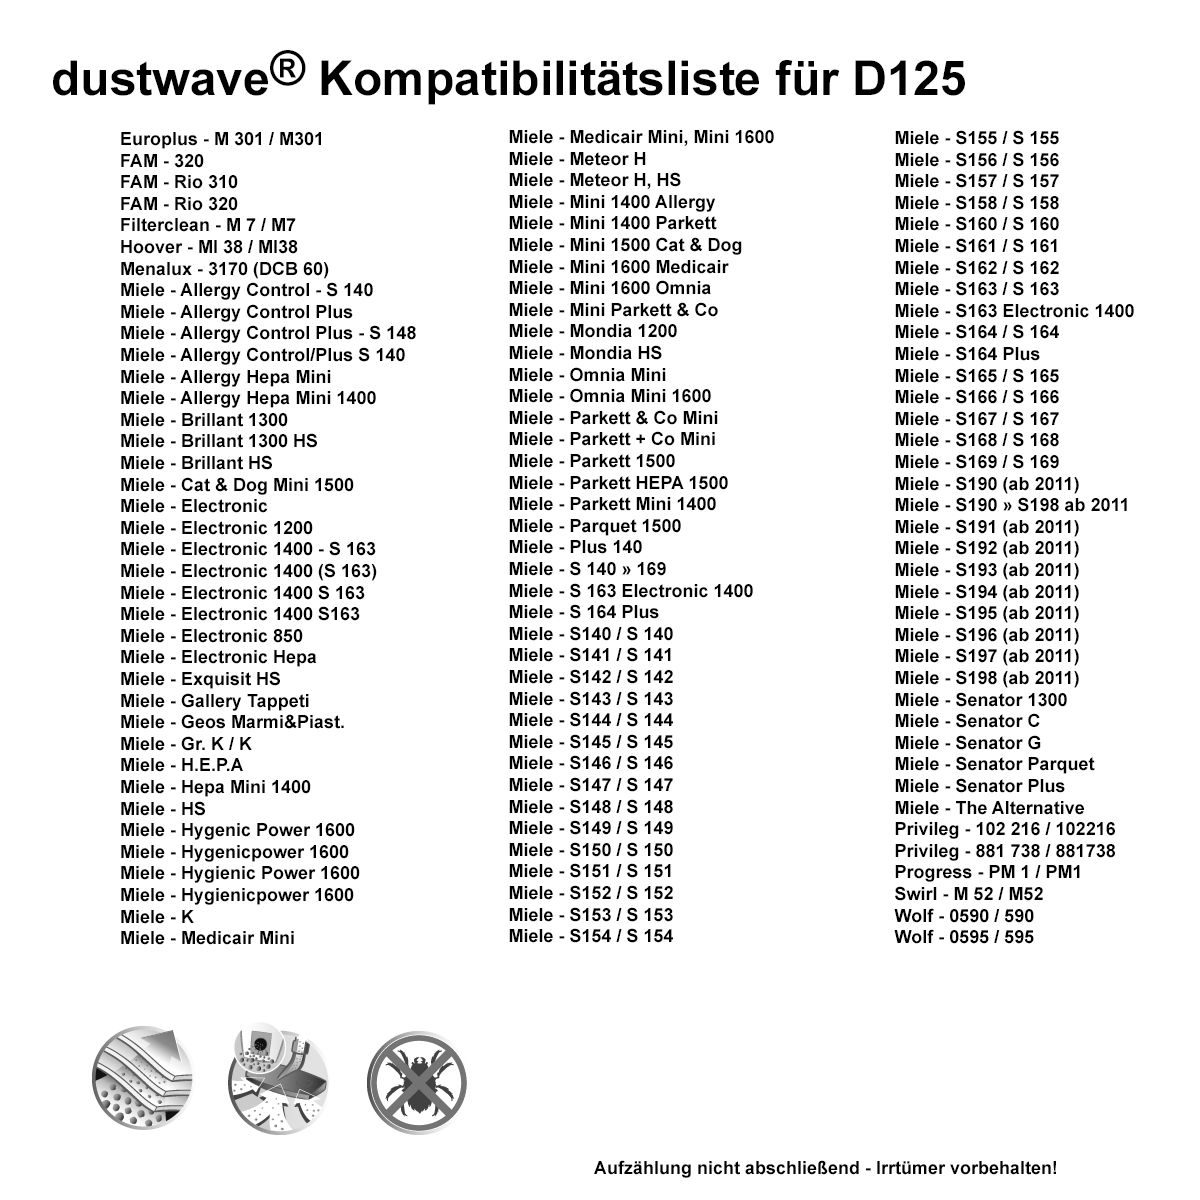 Dustwave® 5 Staubsaugerbeutel für Miele Senator Plus - hocheffizient, mehrlagiges Mikrovlies mit Hygieneverschluss - Made in Germany